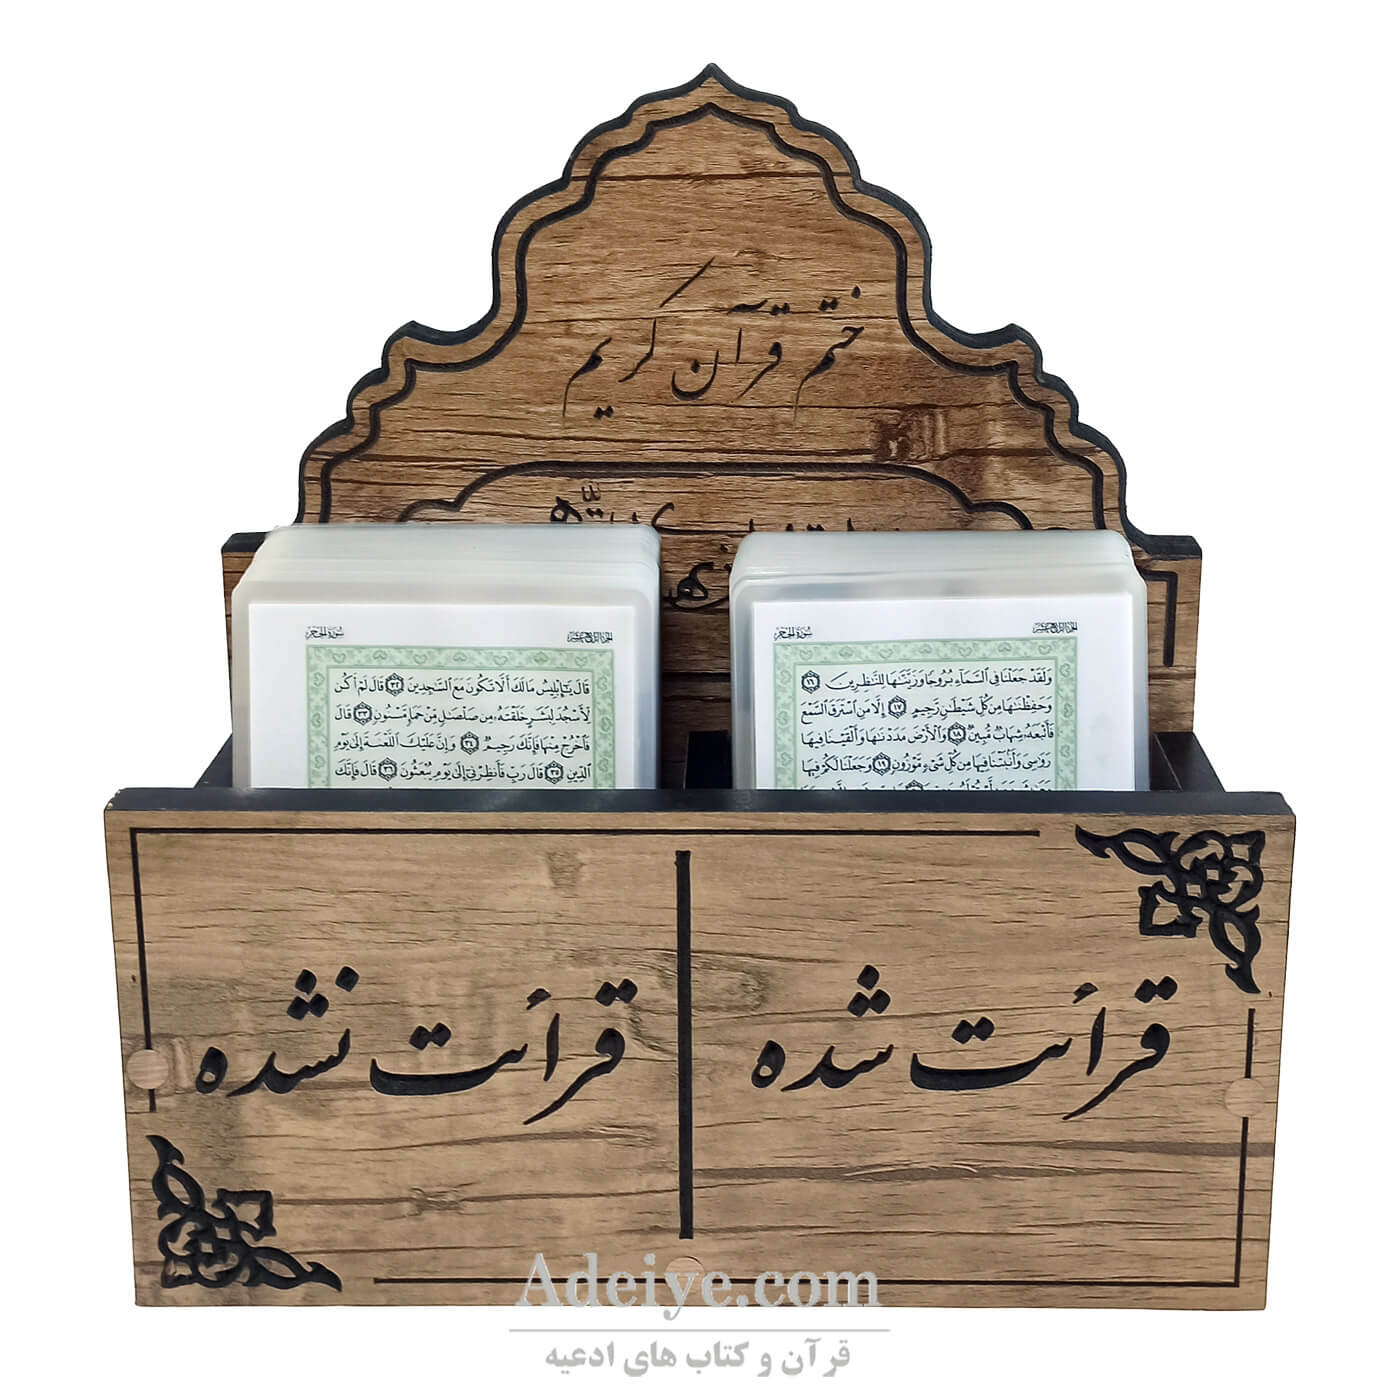 قرآن بدون ترجمه پرس شده مخصوص حفظ اسوه با جعبه دیواری